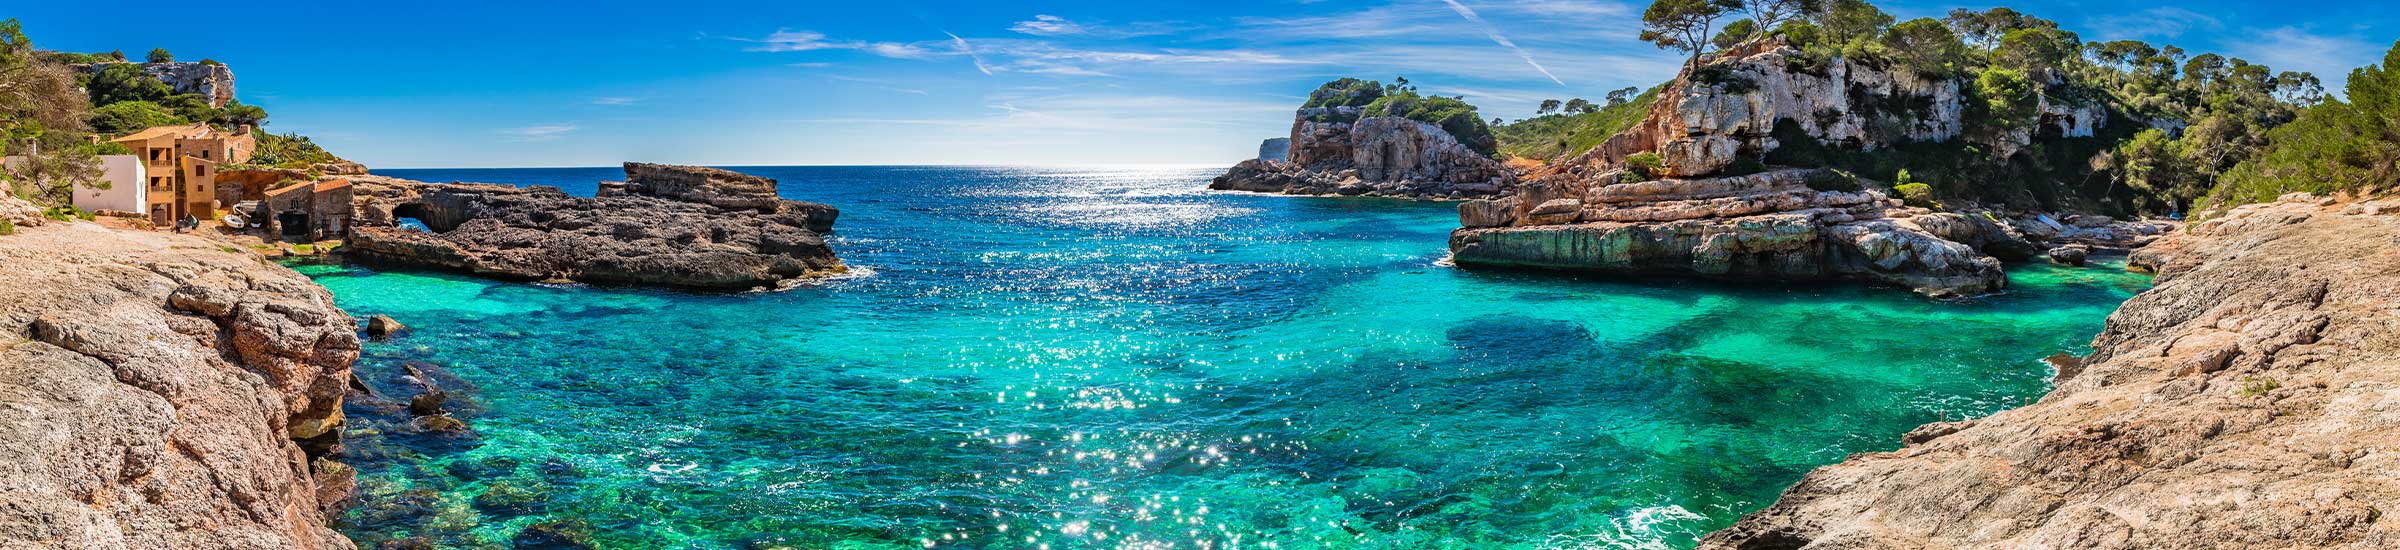 Bucht auf Mallorca mit Blick auf das türkisblaue Mittelmeer